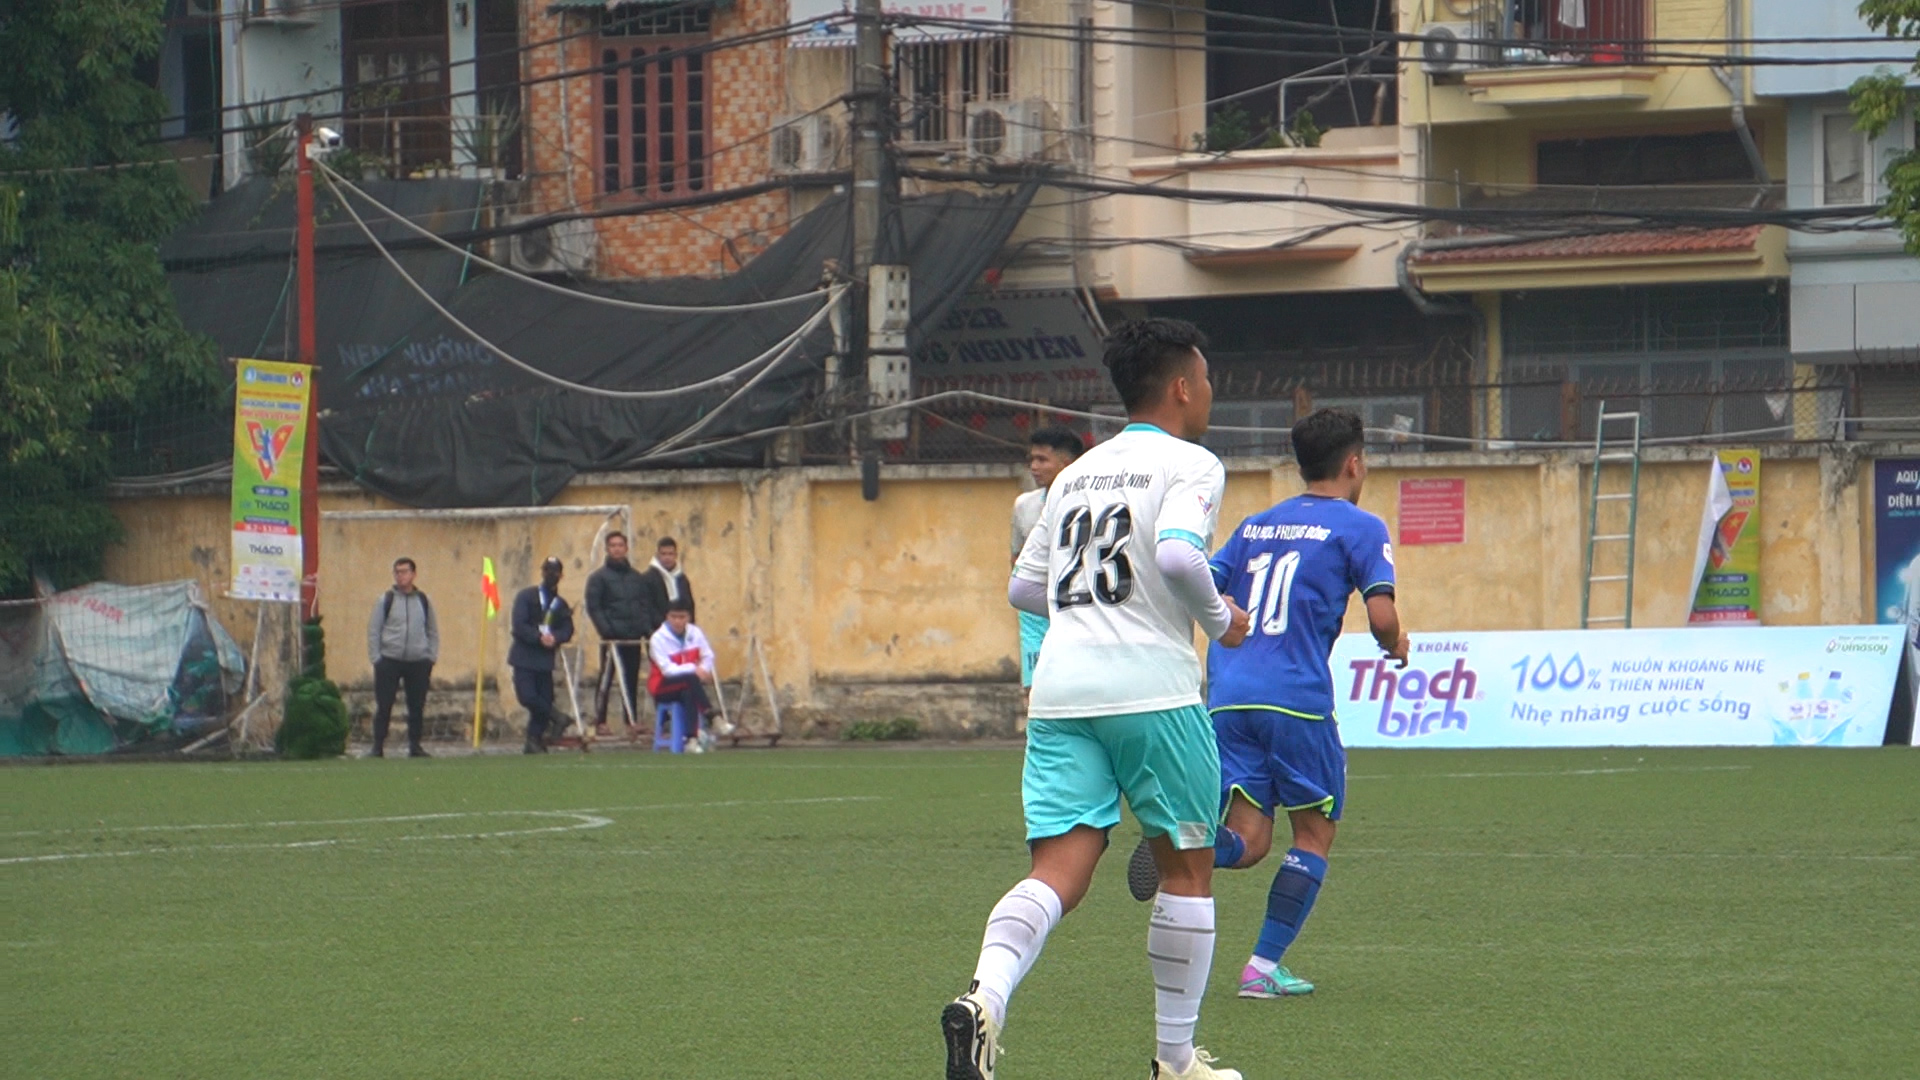 Trước trận 'chung kết bảng', tiền đạo ĐH TDTT Bắc Ninh e ngại nhất cầu thủ này của ĐH Thủy Lợi- Ảnh 2.